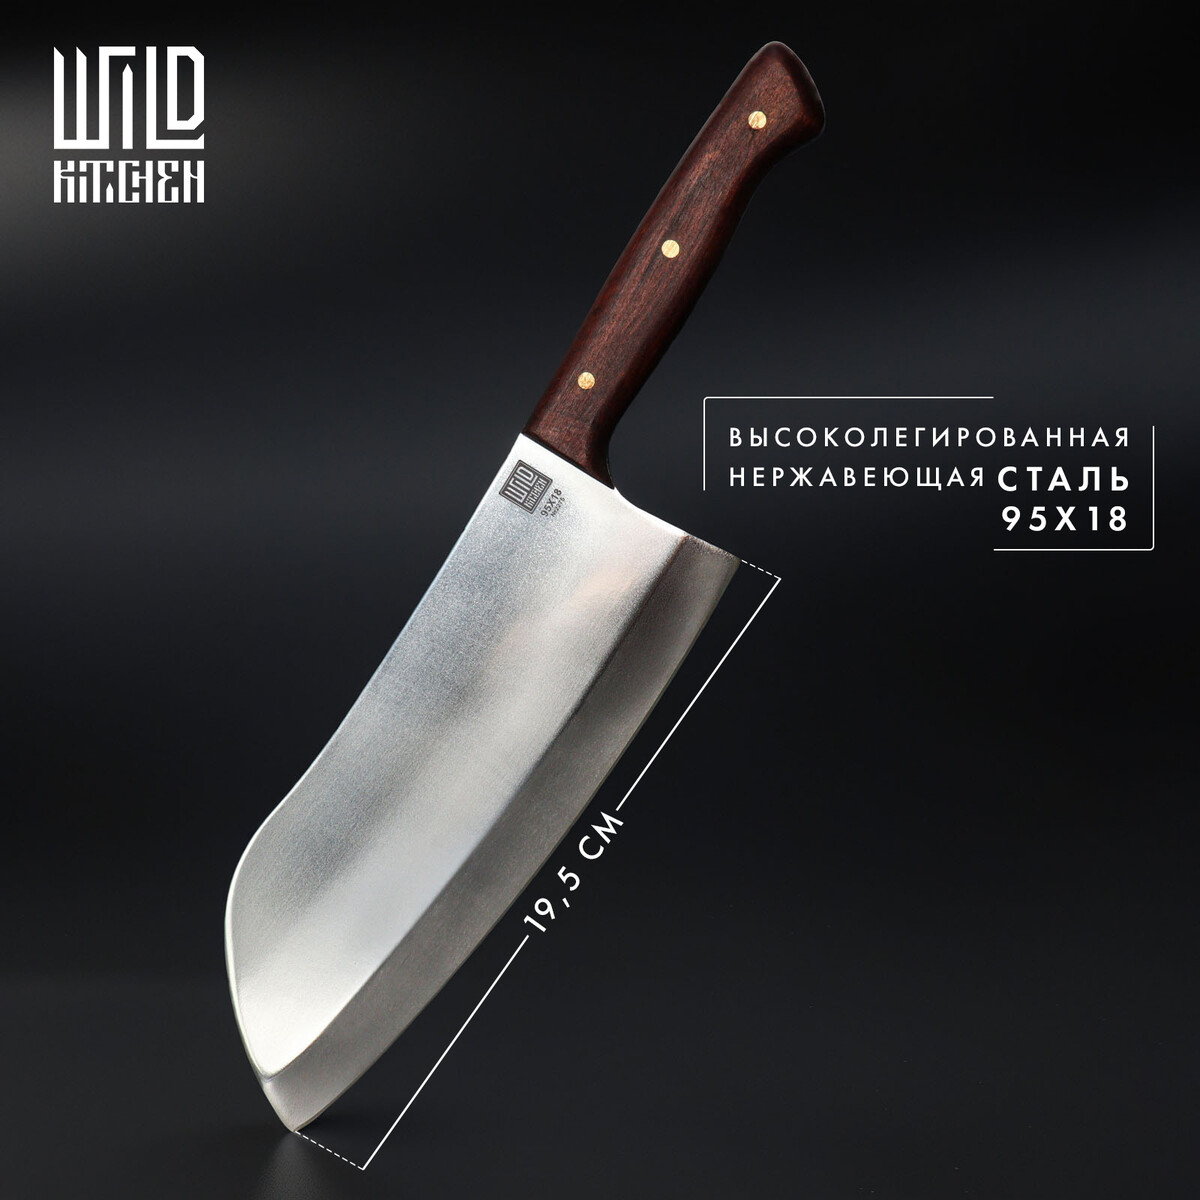 Нож - топорик большой wild kitchen, сталь 95×18, лезвие 19,5 см нож пчак кухонный wild kitchen сталь 95×18 лезвие 16 5 см